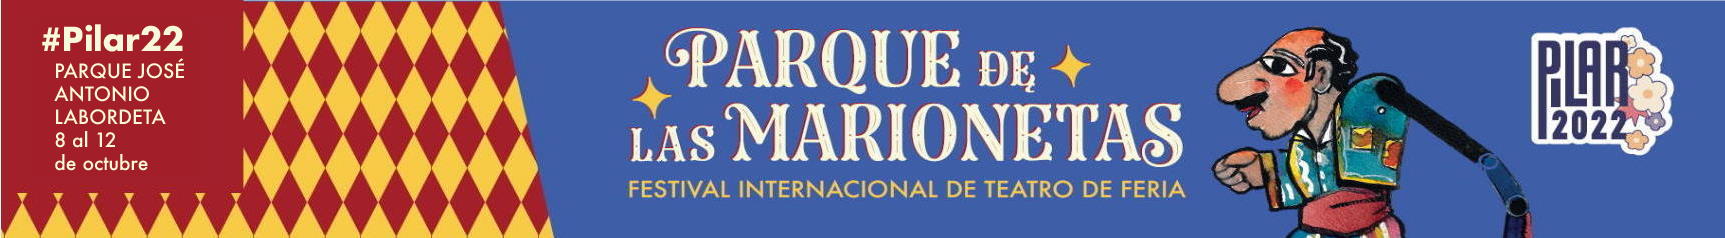 Festival Internacional de Teatro de Feria - Parque de las Marionetas